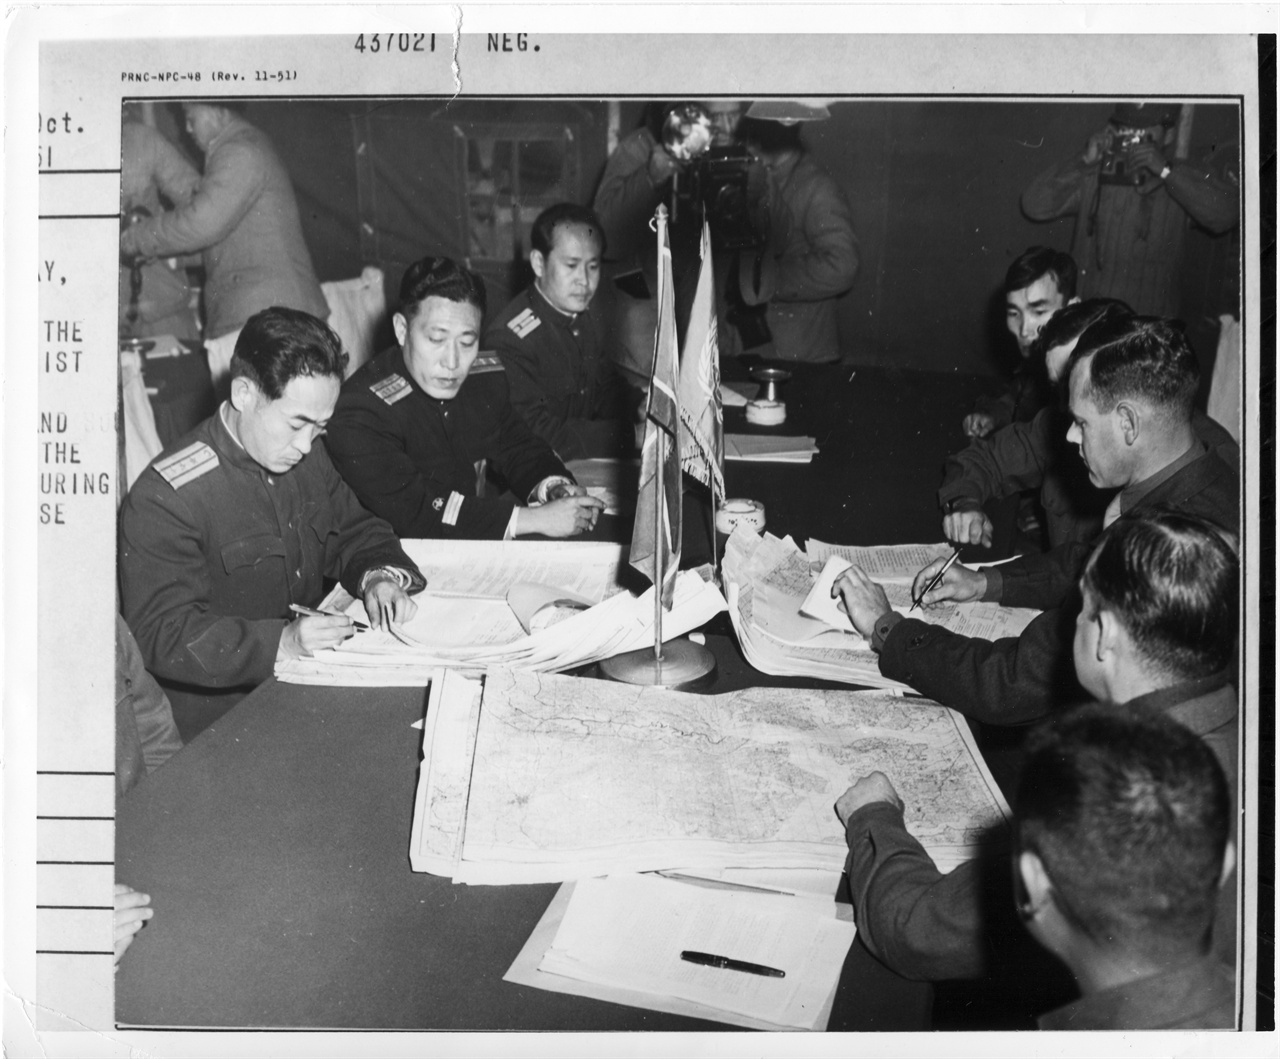  1951. 10. 11 정전회담 양측 실무자들이 지도를 펴놓고 휴전선에 대하여 논의하고 있다.  